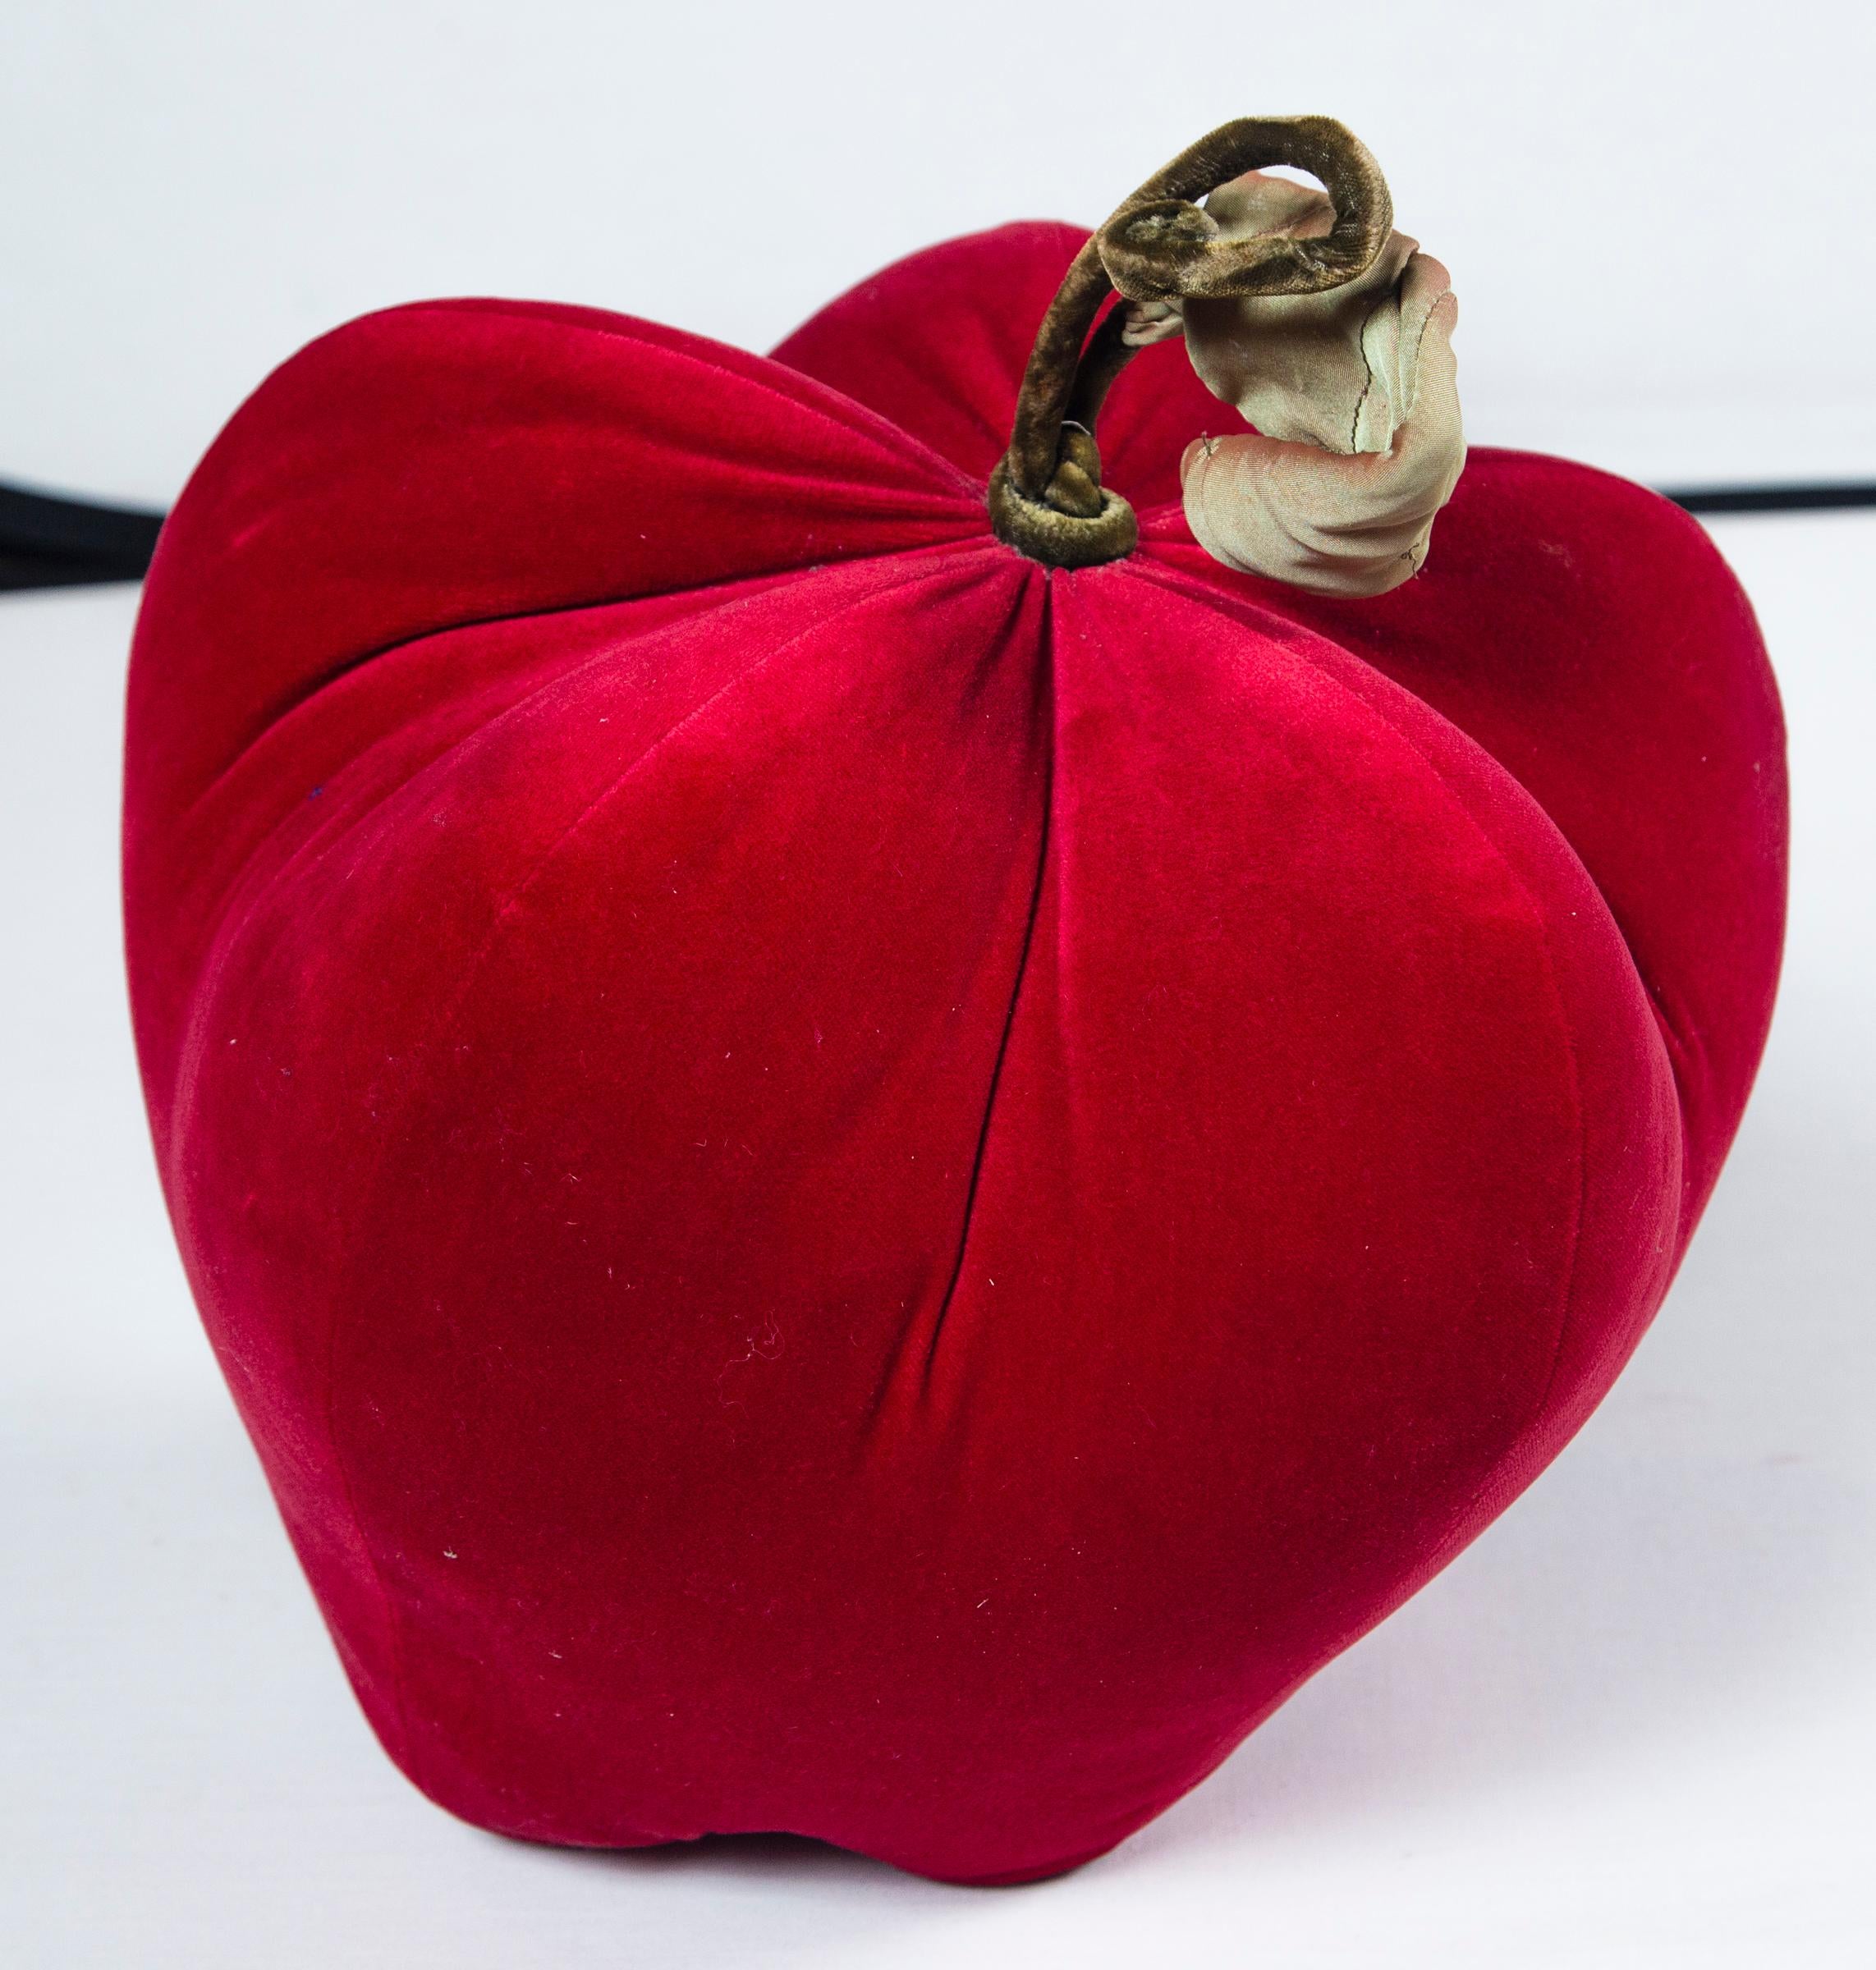 Mid-20th Century Large Red Velvet Apple